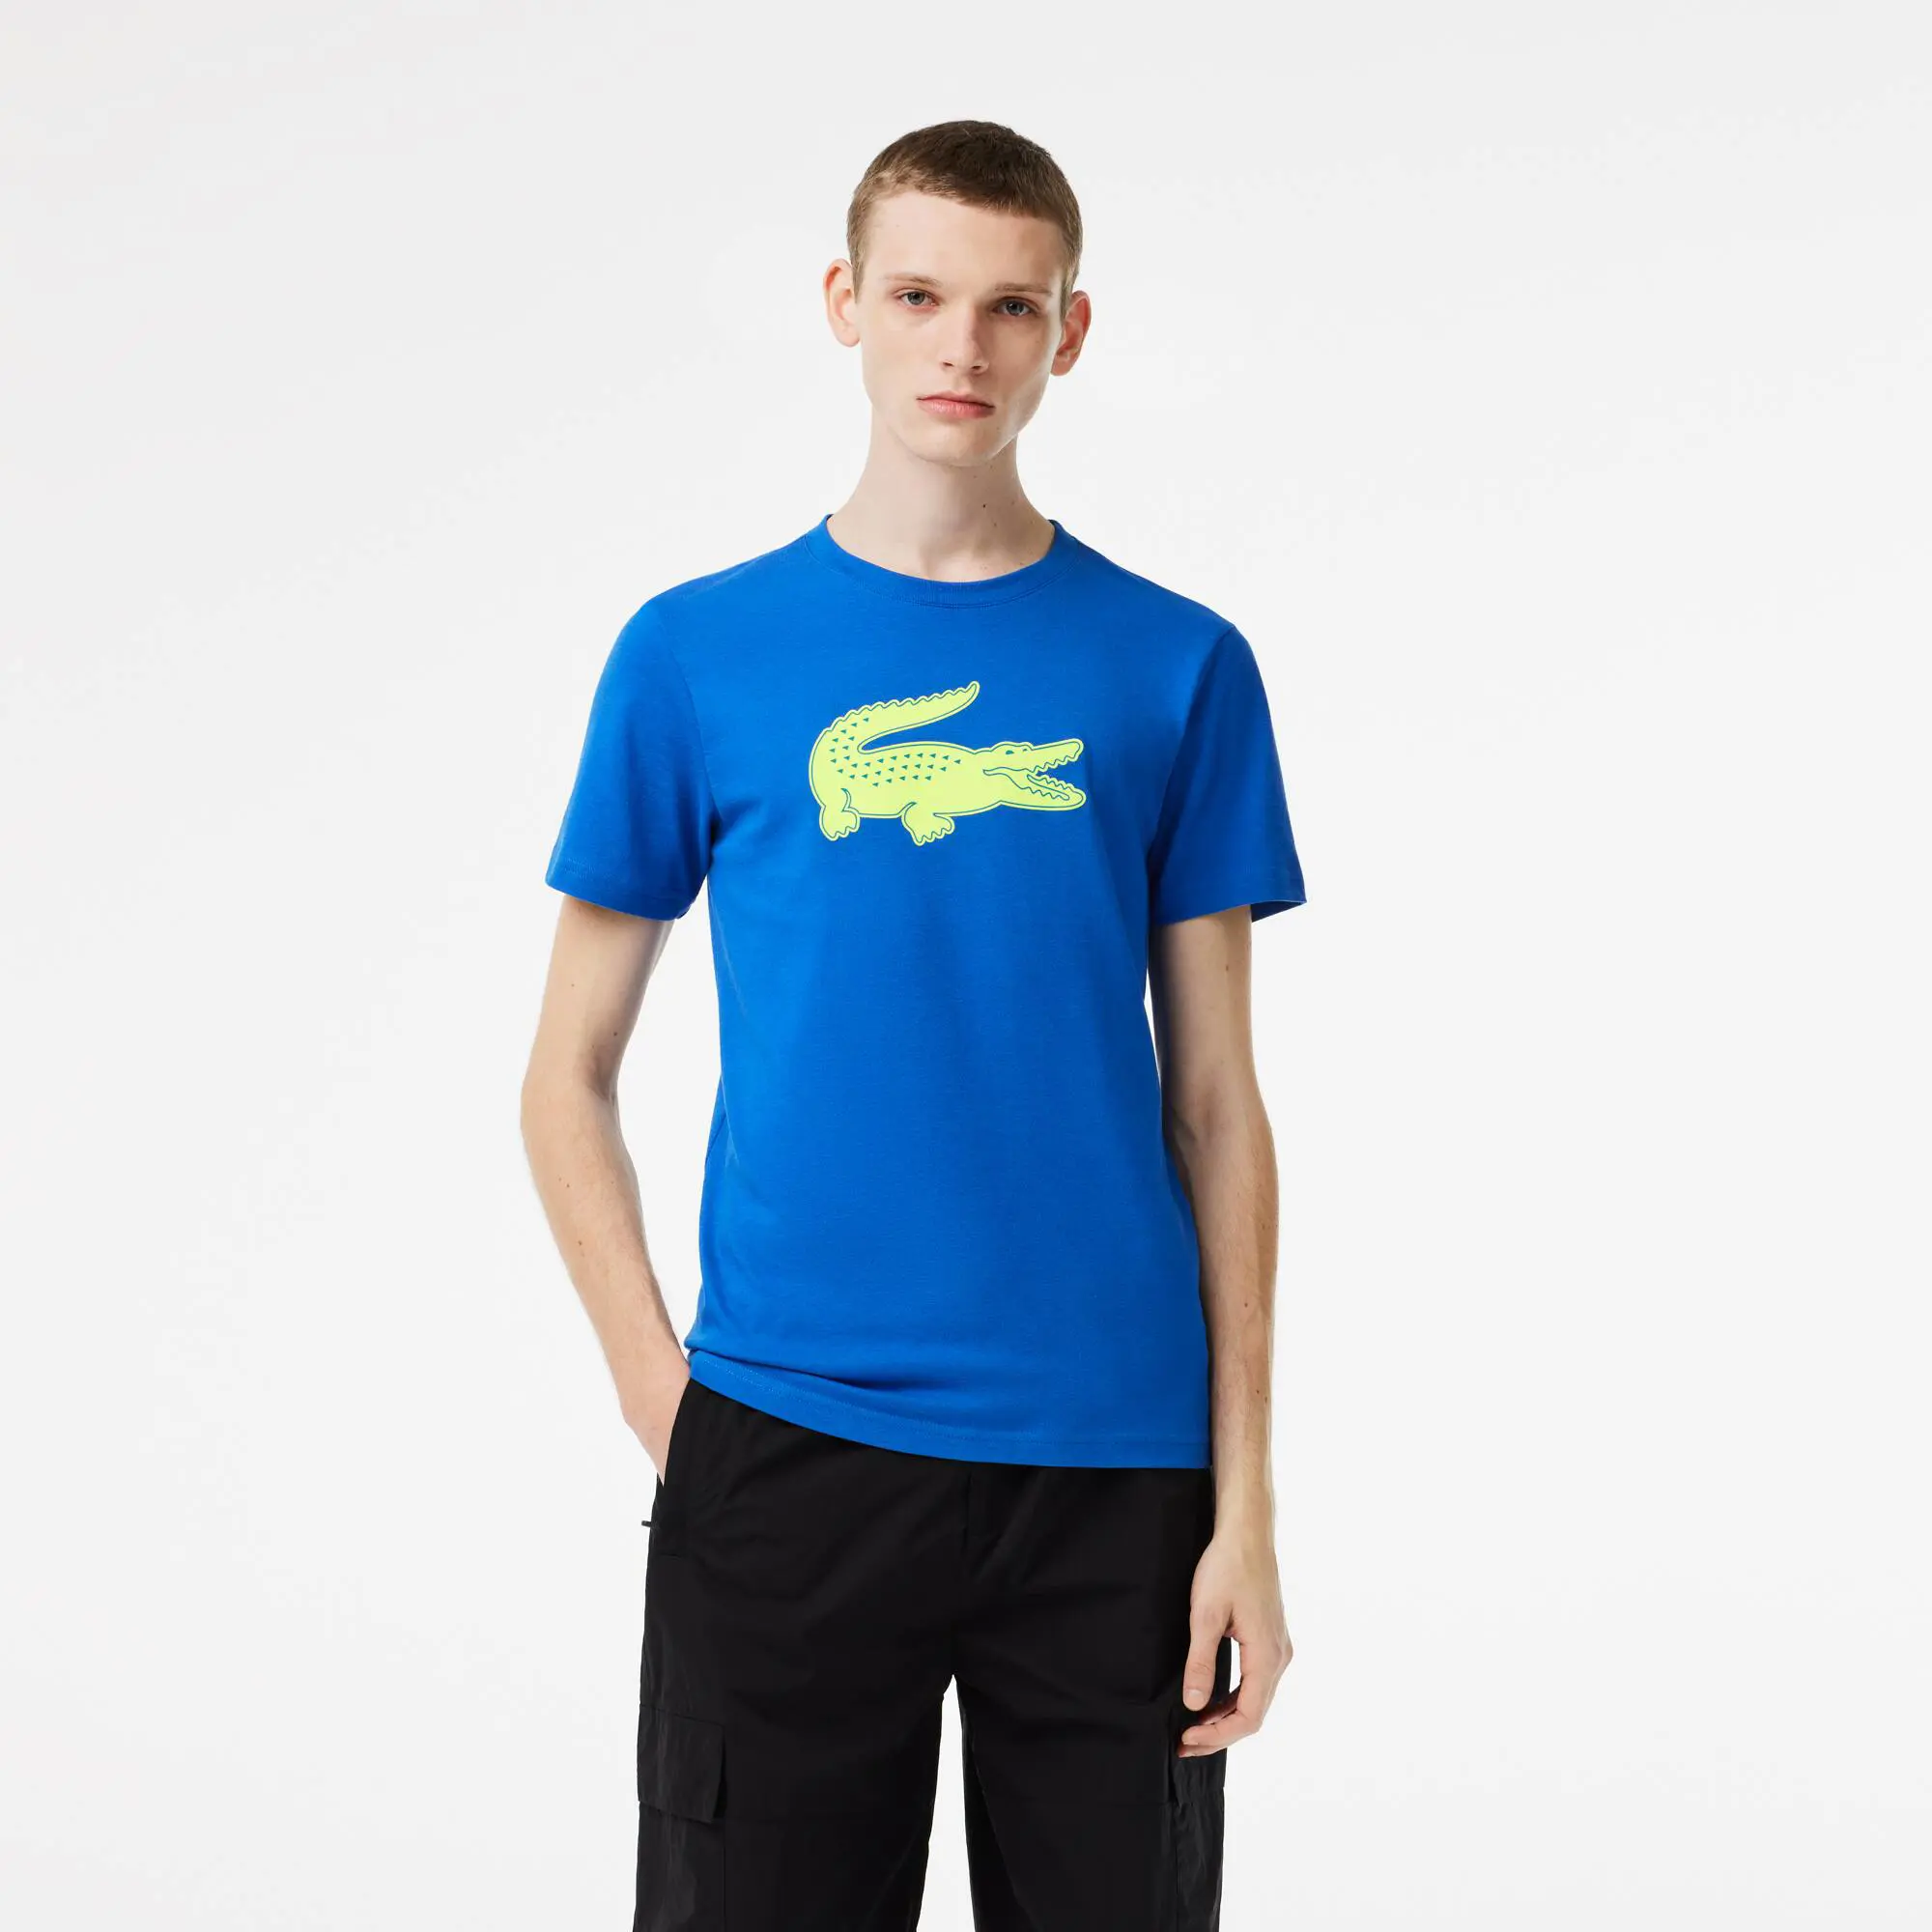 Lacoste T-shirt da uomo in jersey traspirante con coccodrillo stampato in 3D Lacoste SPORT. 1